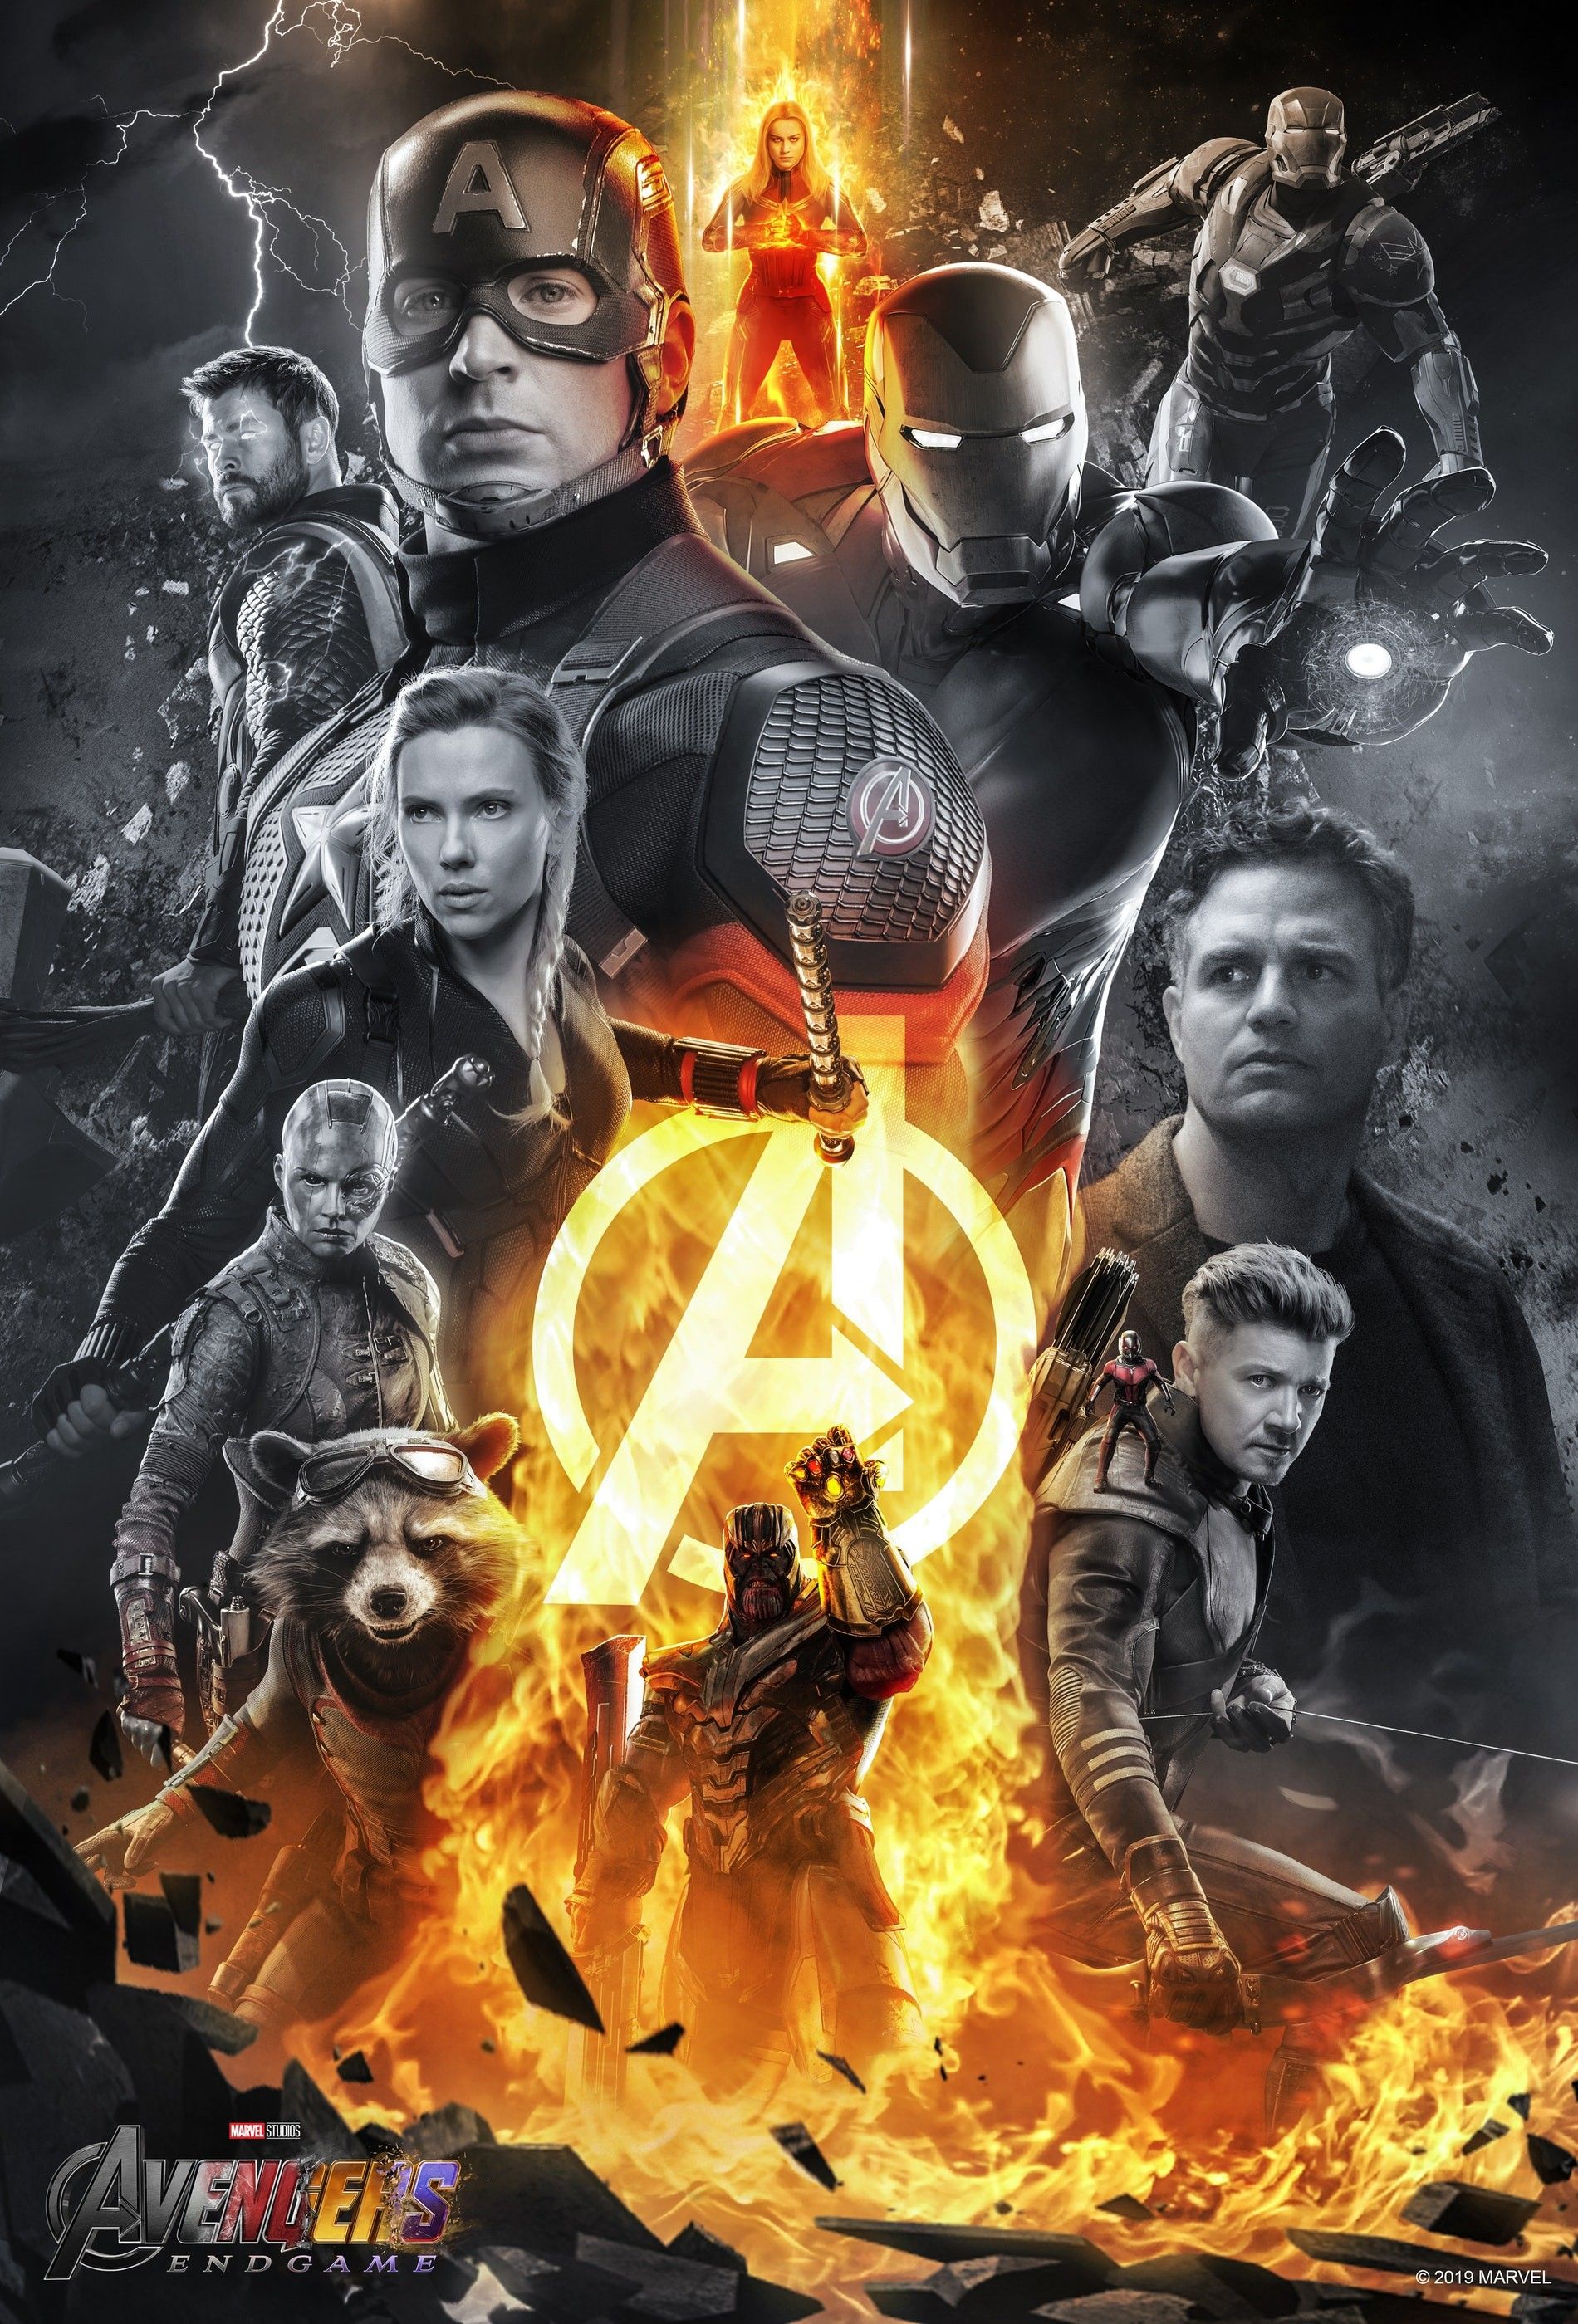 Avengers Endgame alternate poster